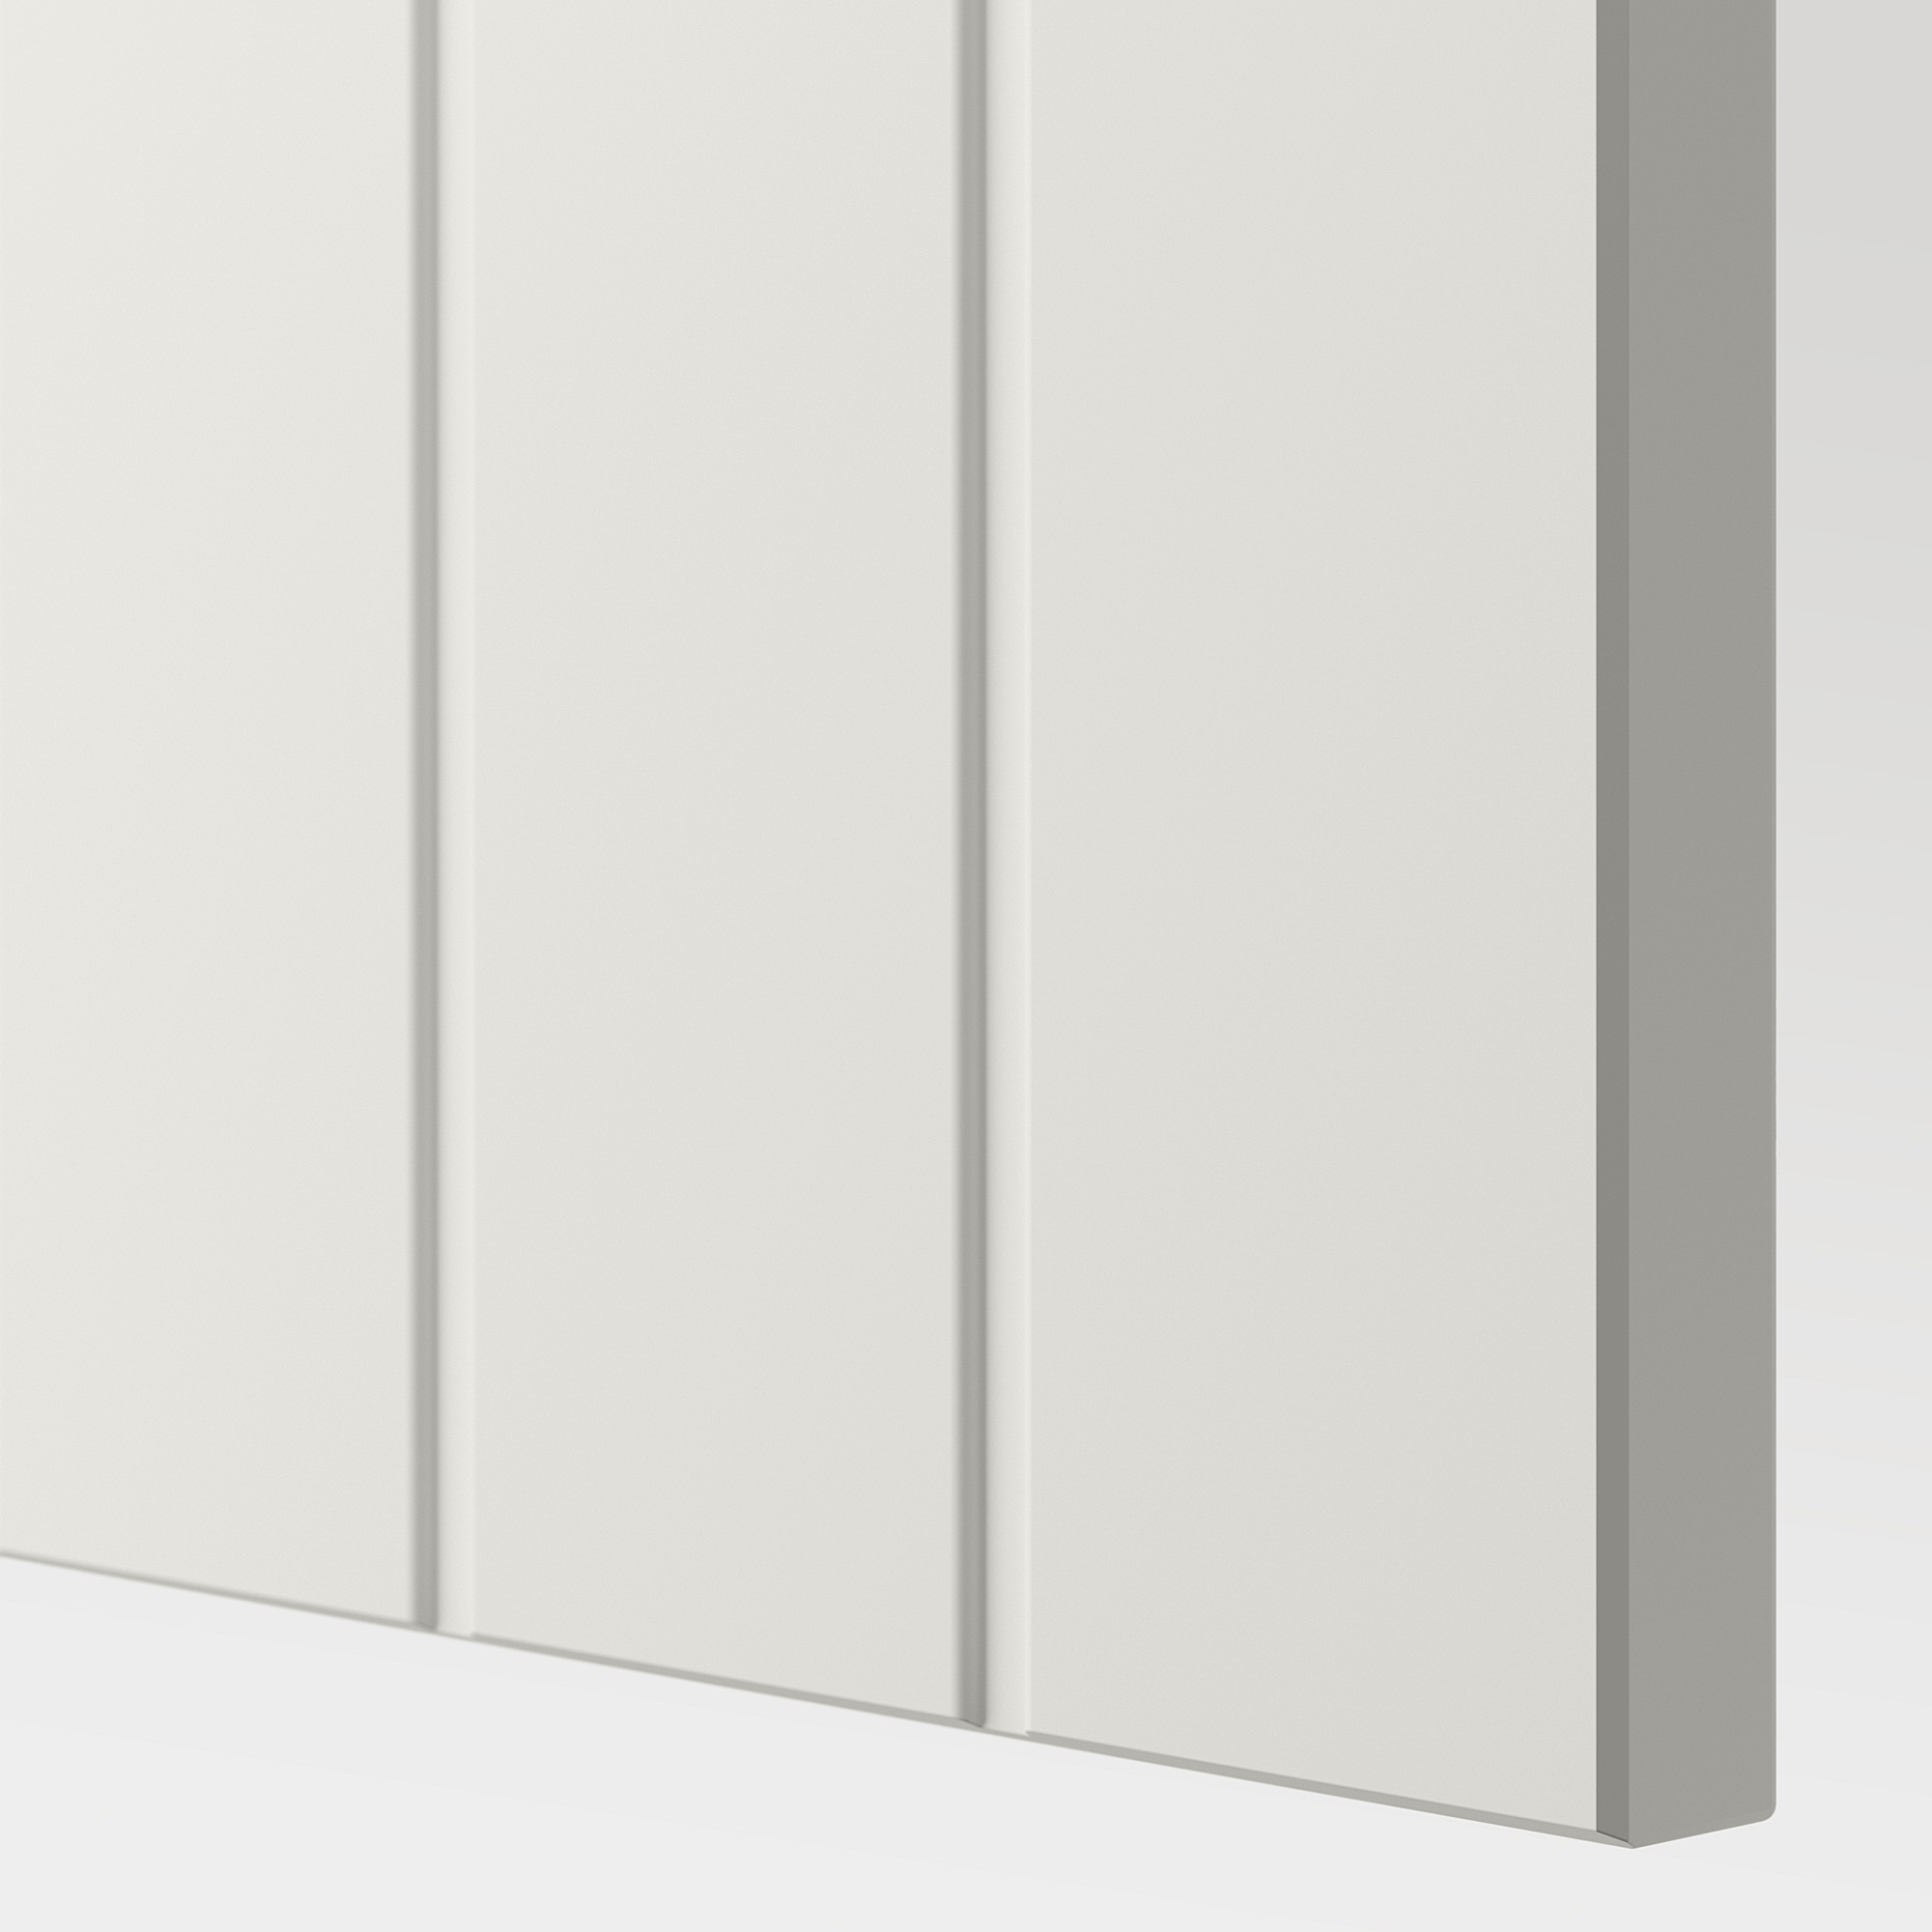 BESTÅ shelf unit with door